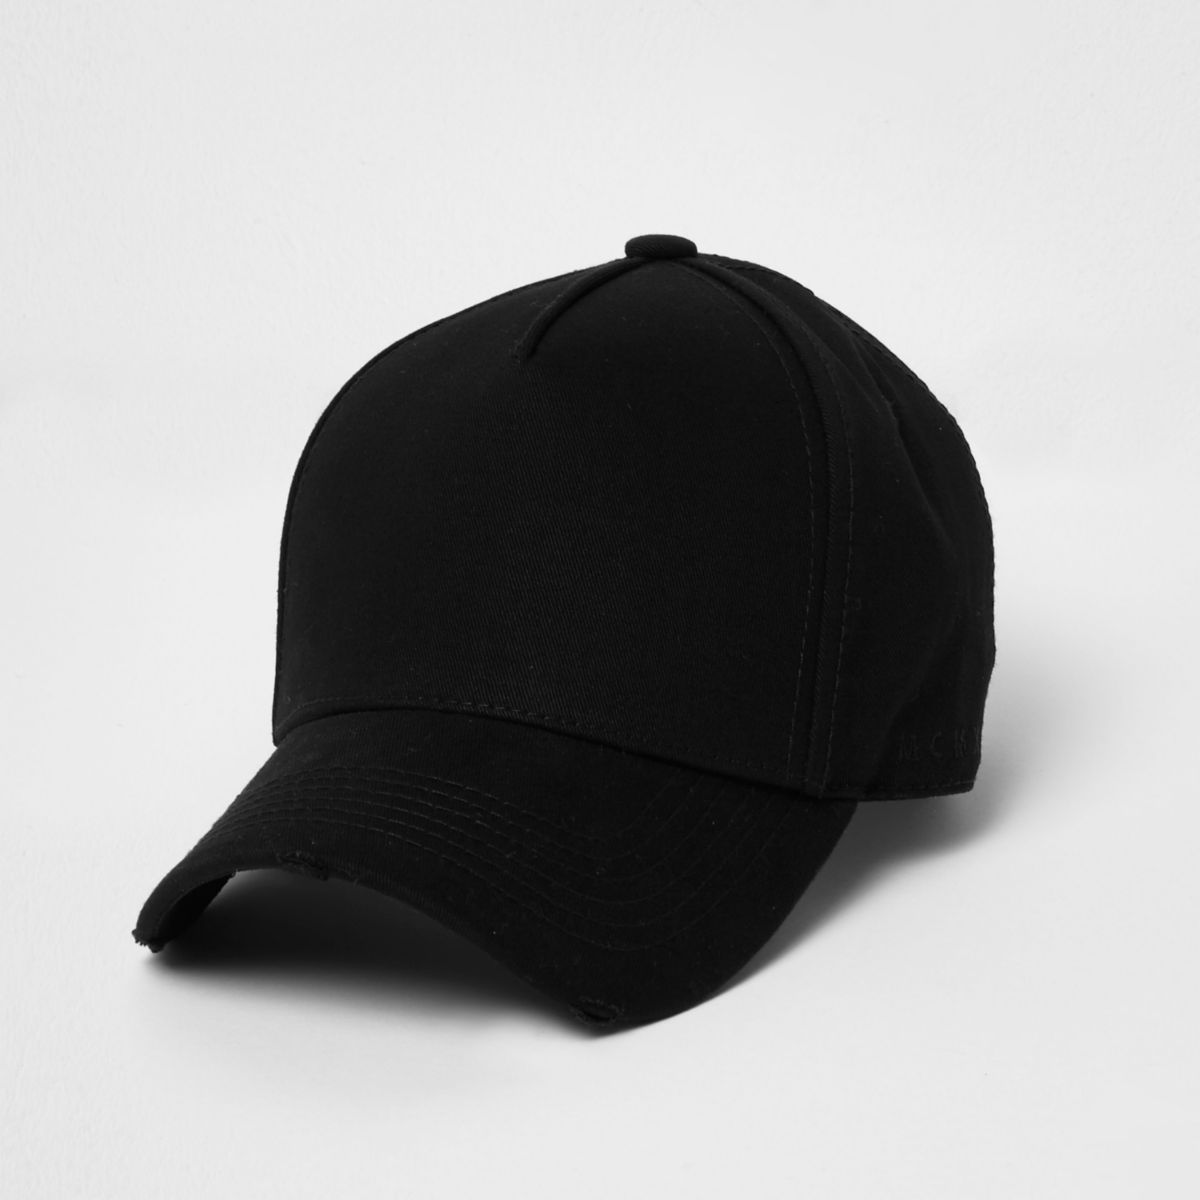 Washed black baseball cap - Hats / Caps - Accessories - men